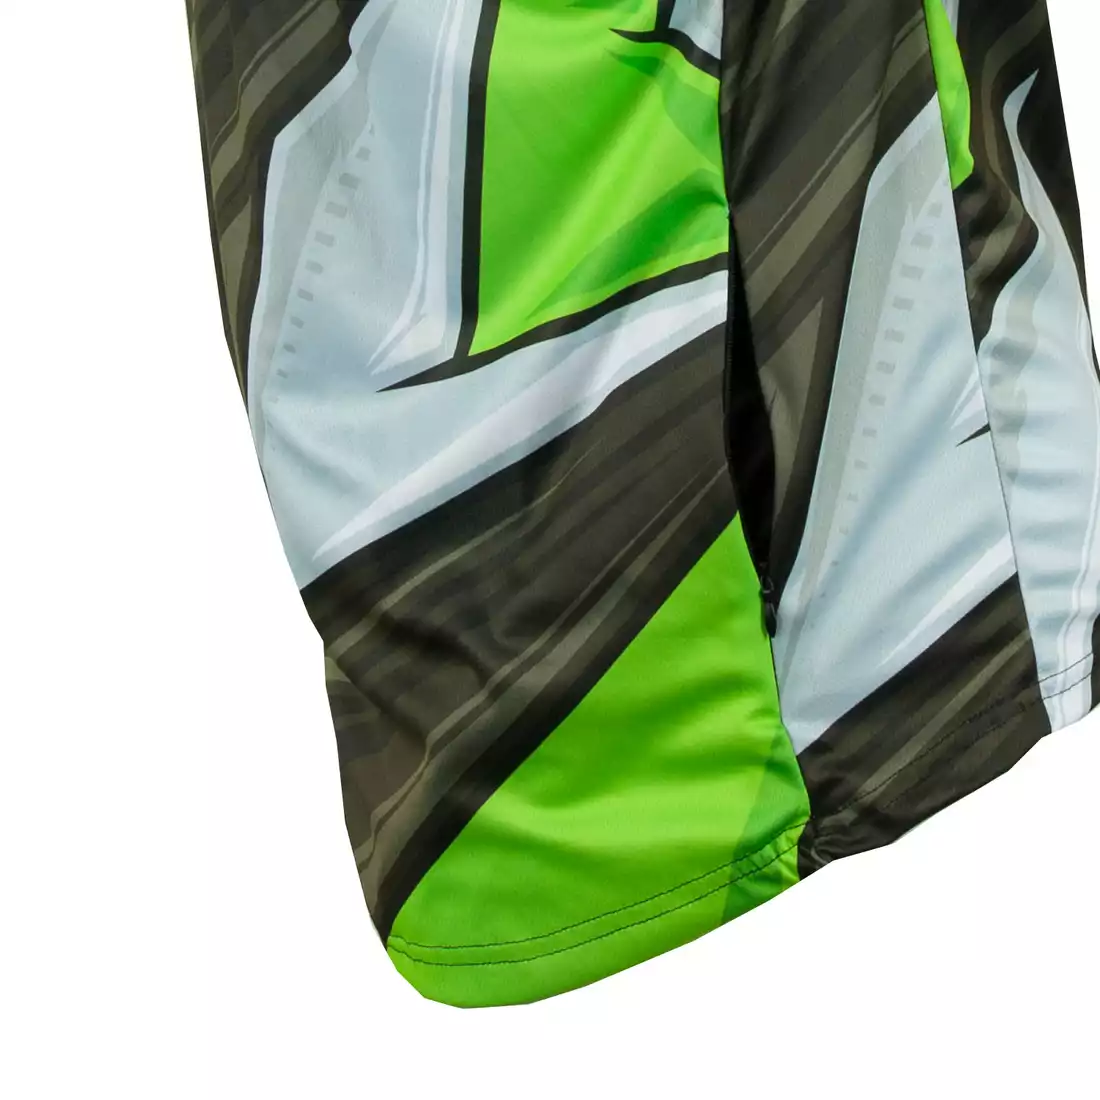 KAYMAQ DESIGN M43 męska luźna koszulka rowerowa MTB, fluor zielony